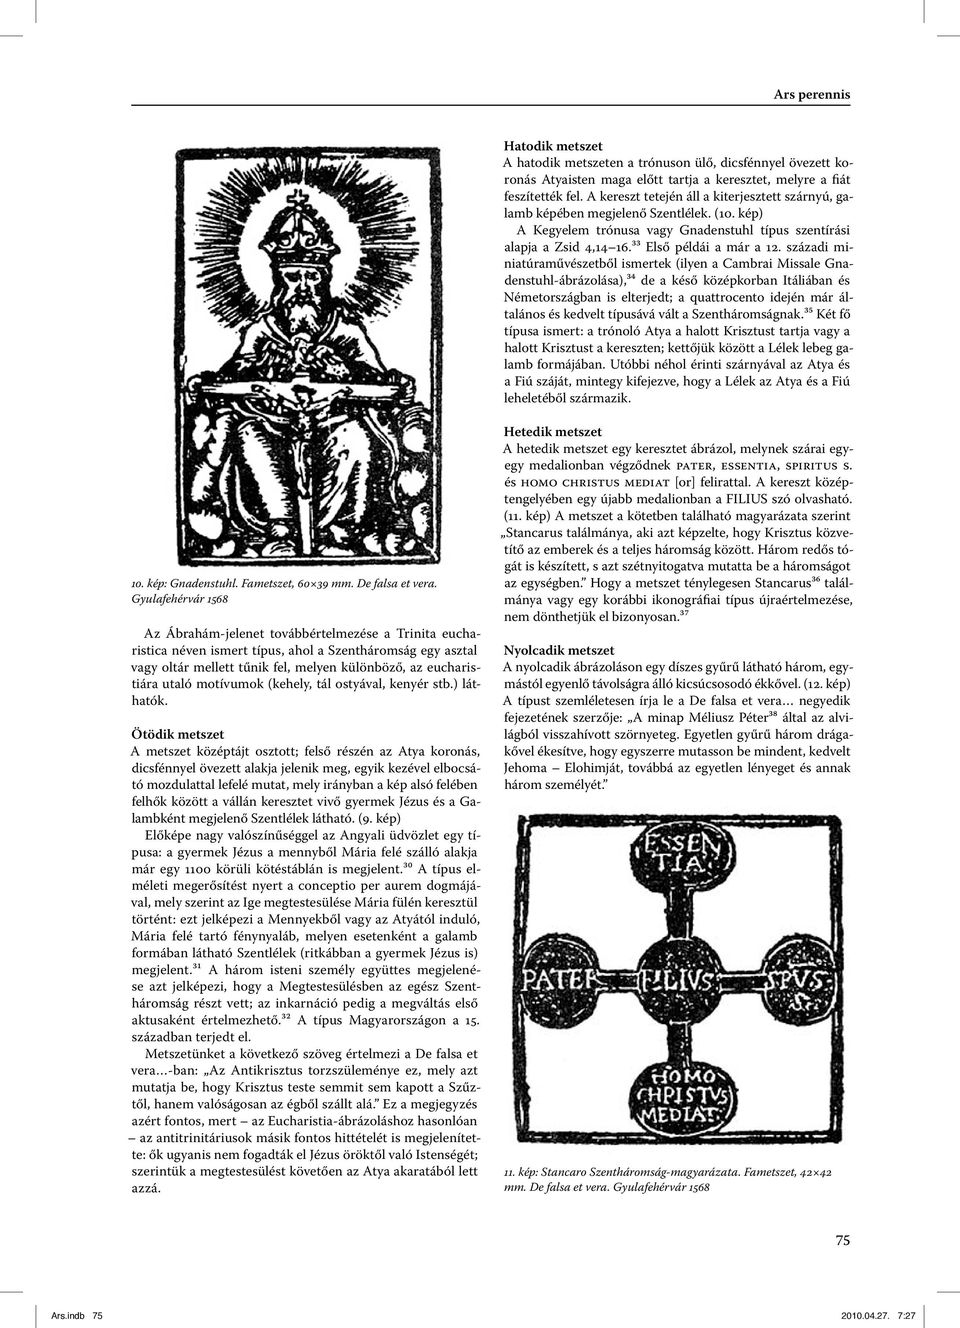 századi miniatúraművészetből ismertek (ilyen a Cambrai Missale Gnadens tuhl-ábrázolása),³⁴ de a késő középkorban Itáliában és Né met or szág ban is elterjedt; a quattrocento idején már általános és